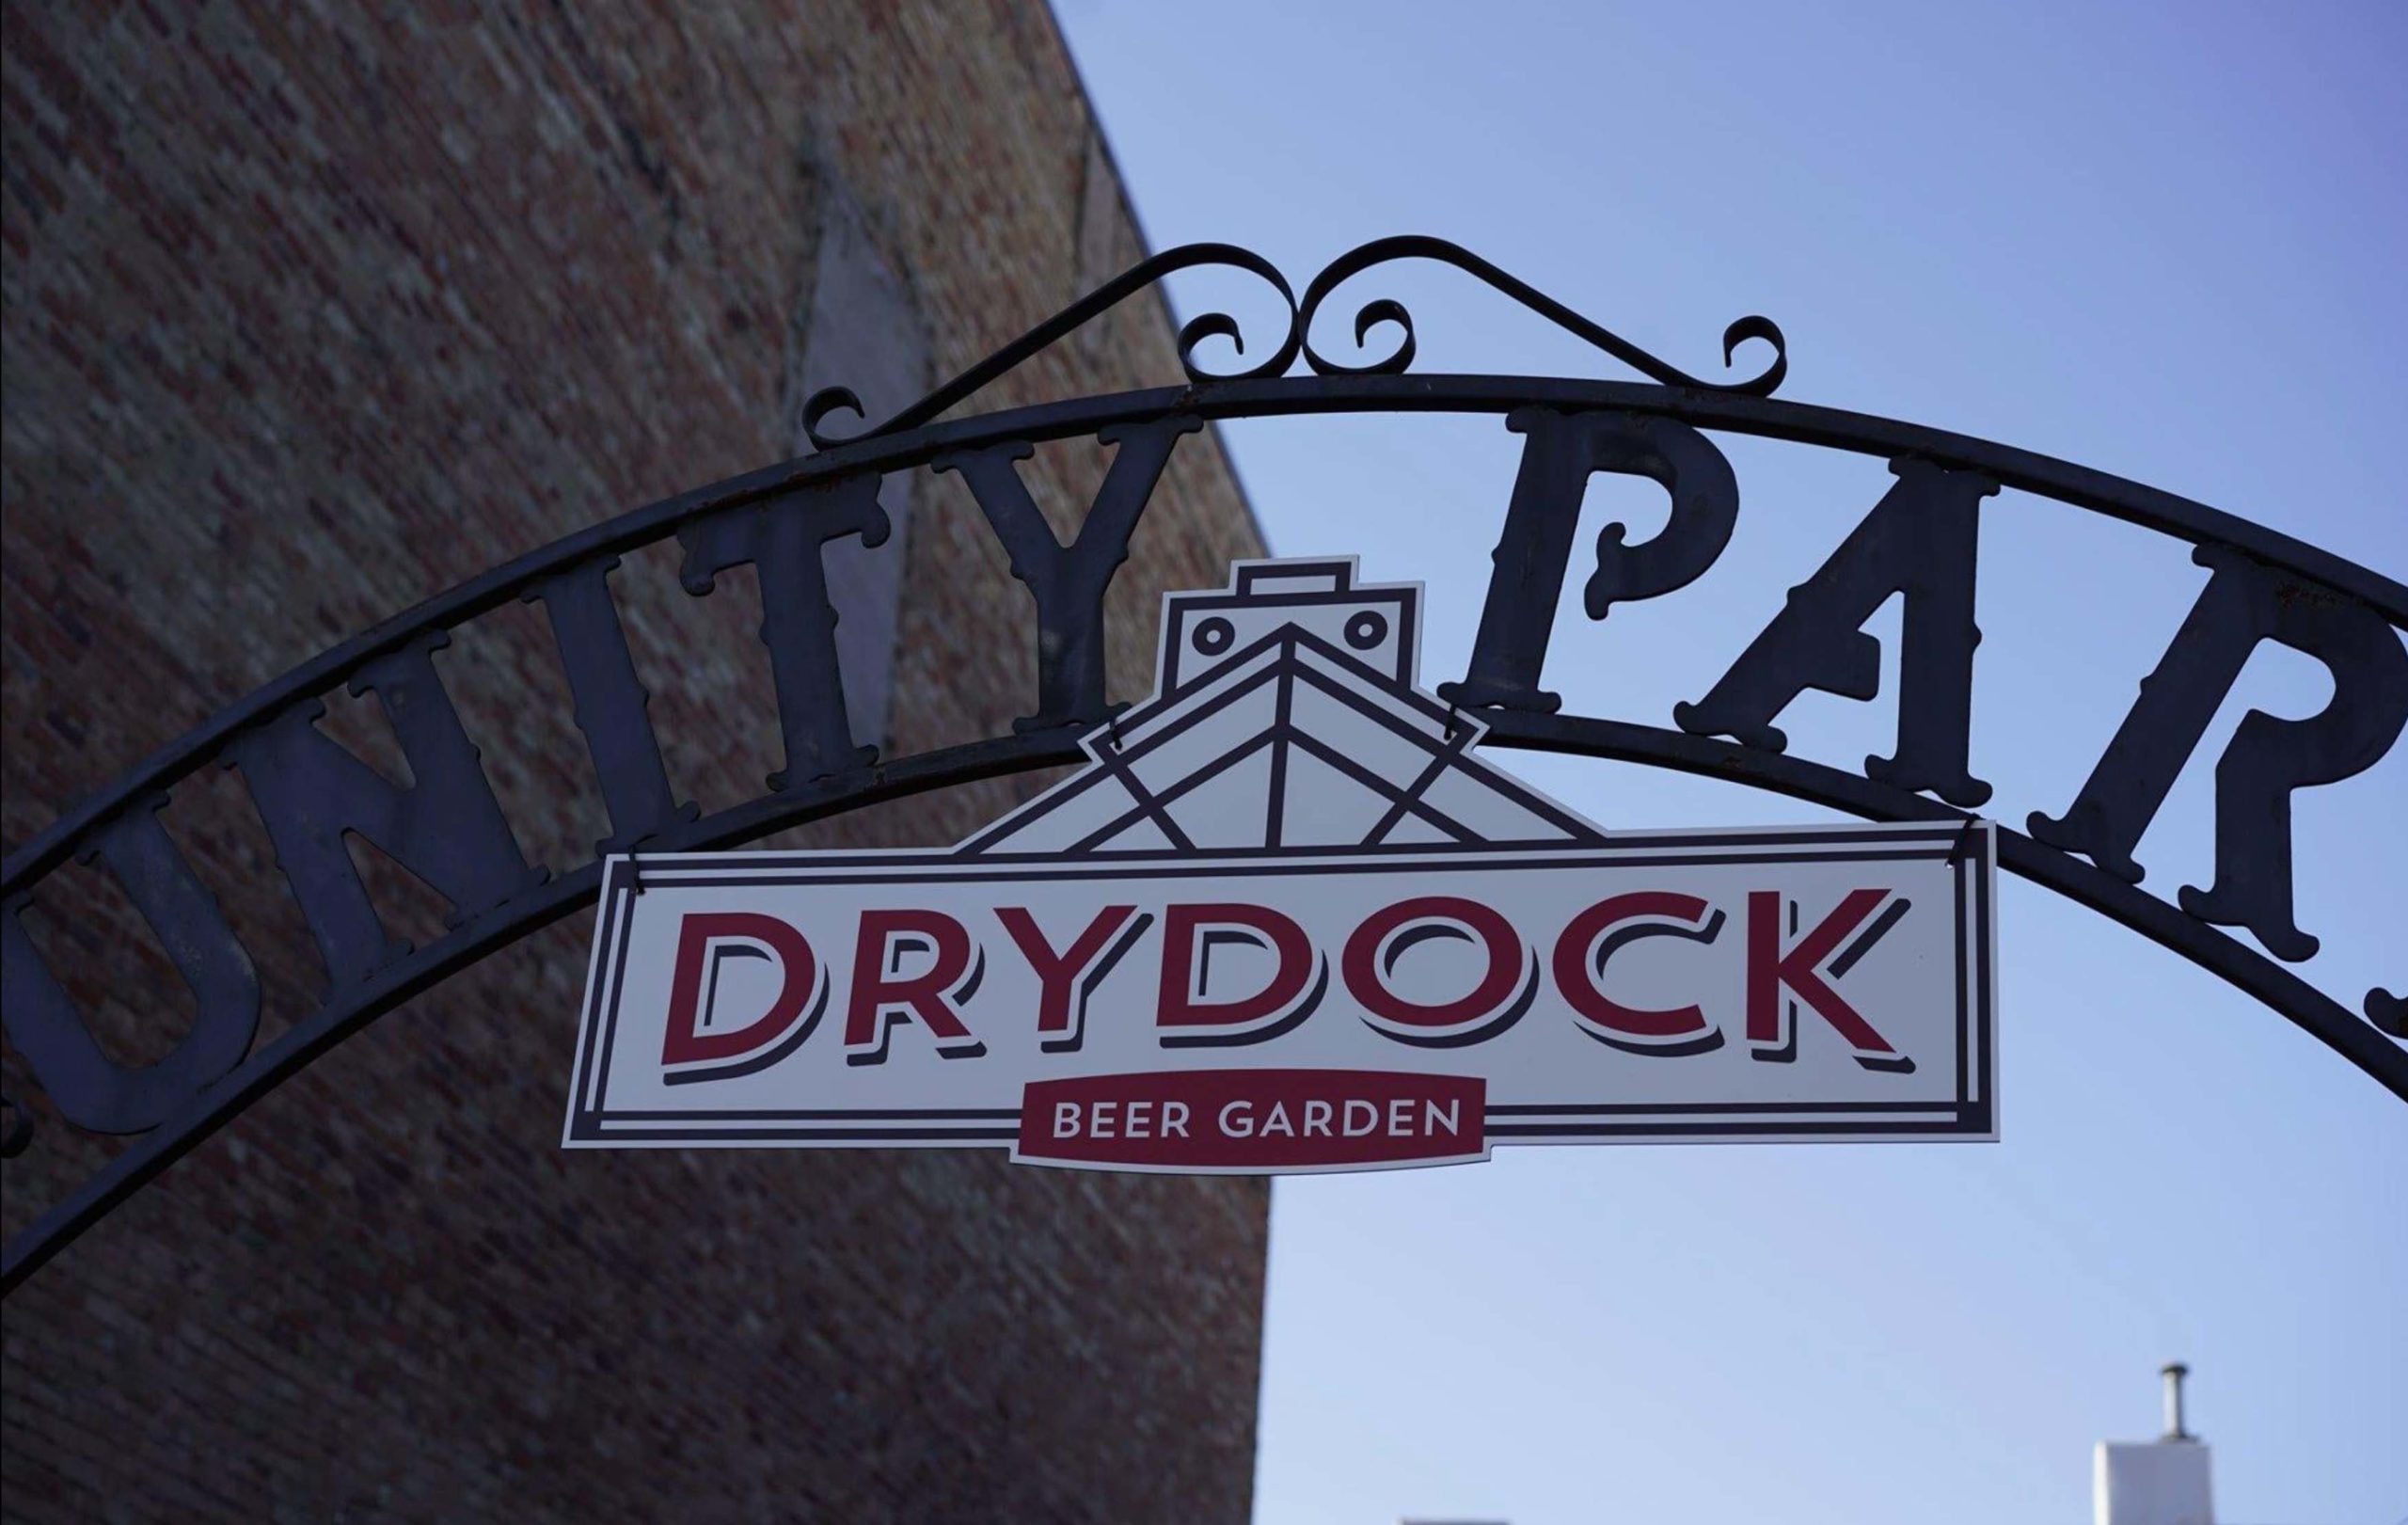 Sign above Drydock Beer Garden in Bay City, MI.